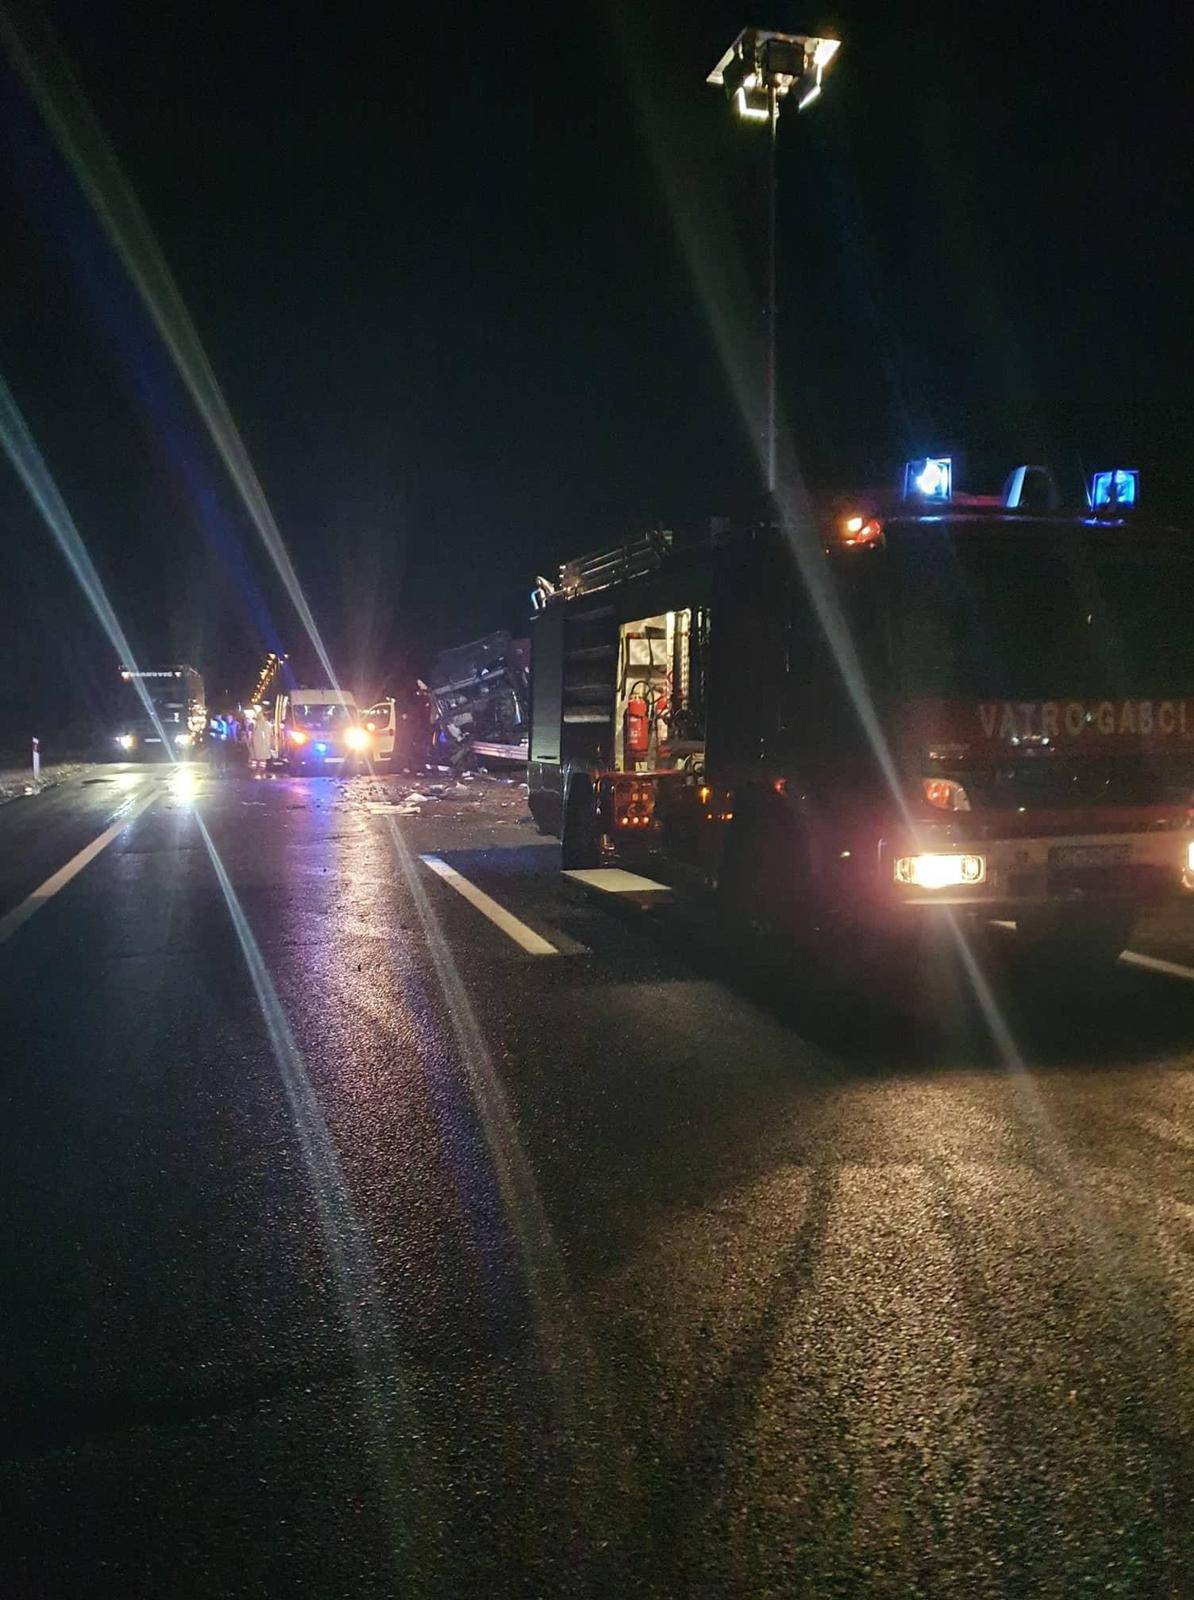 Vozač jednog od kamiona iz sudara kod Novske: 'Čista je sreća da netko nije poginuo'